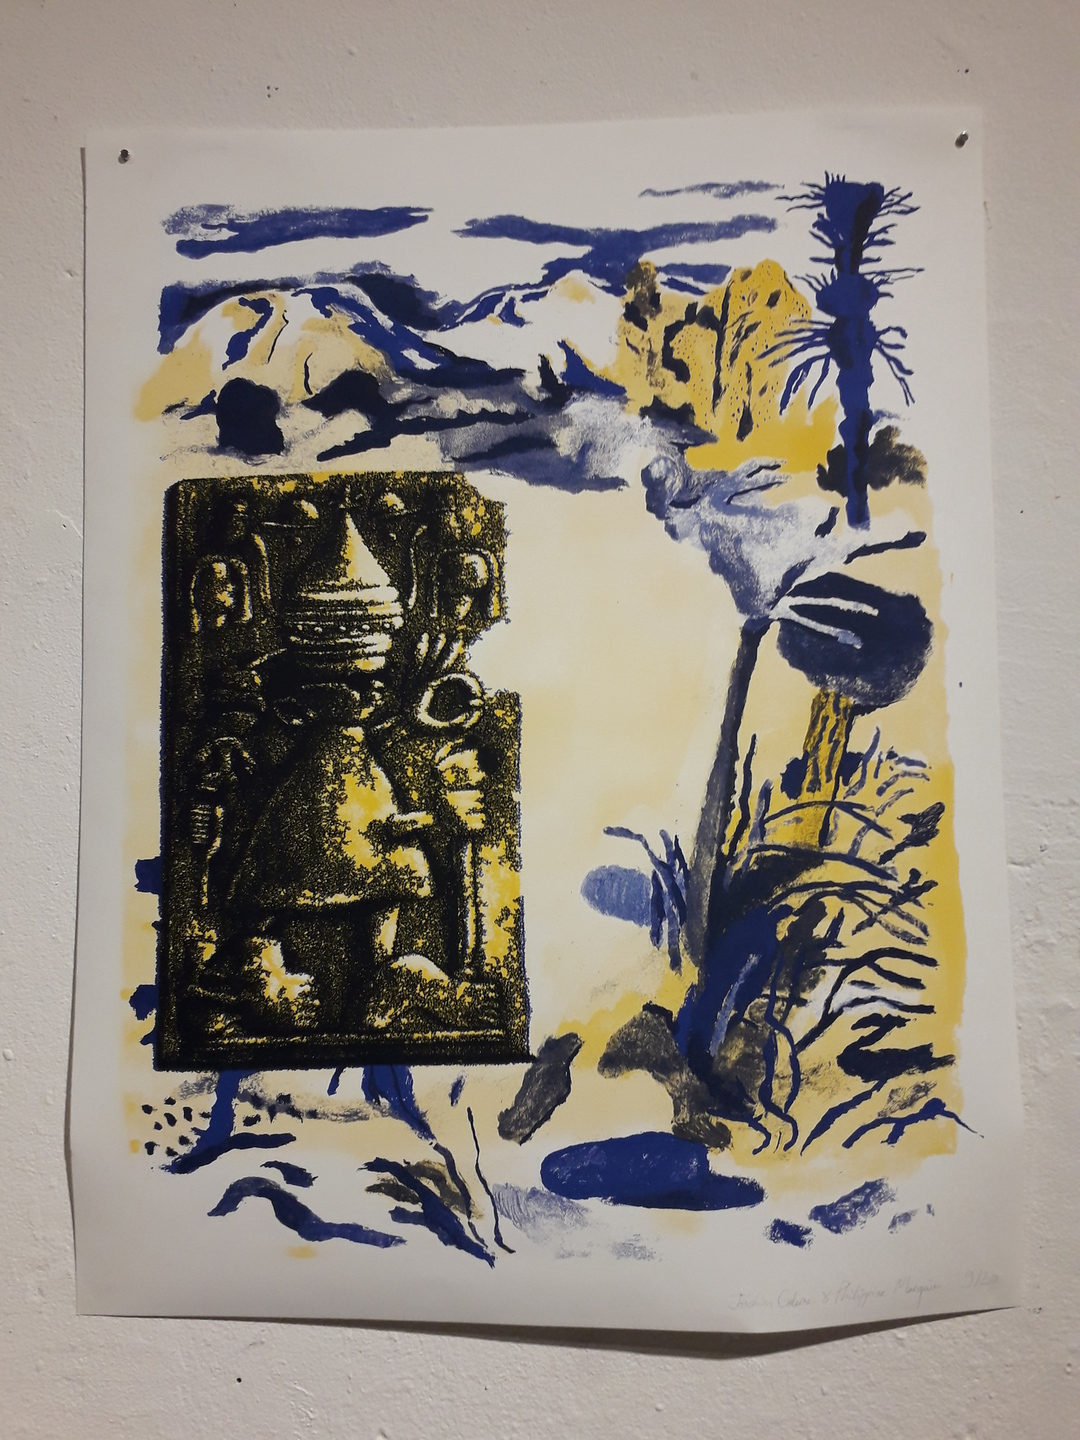 Image 15 : Illustration mêlant paysage et art ancien en bleu, jaune et noir